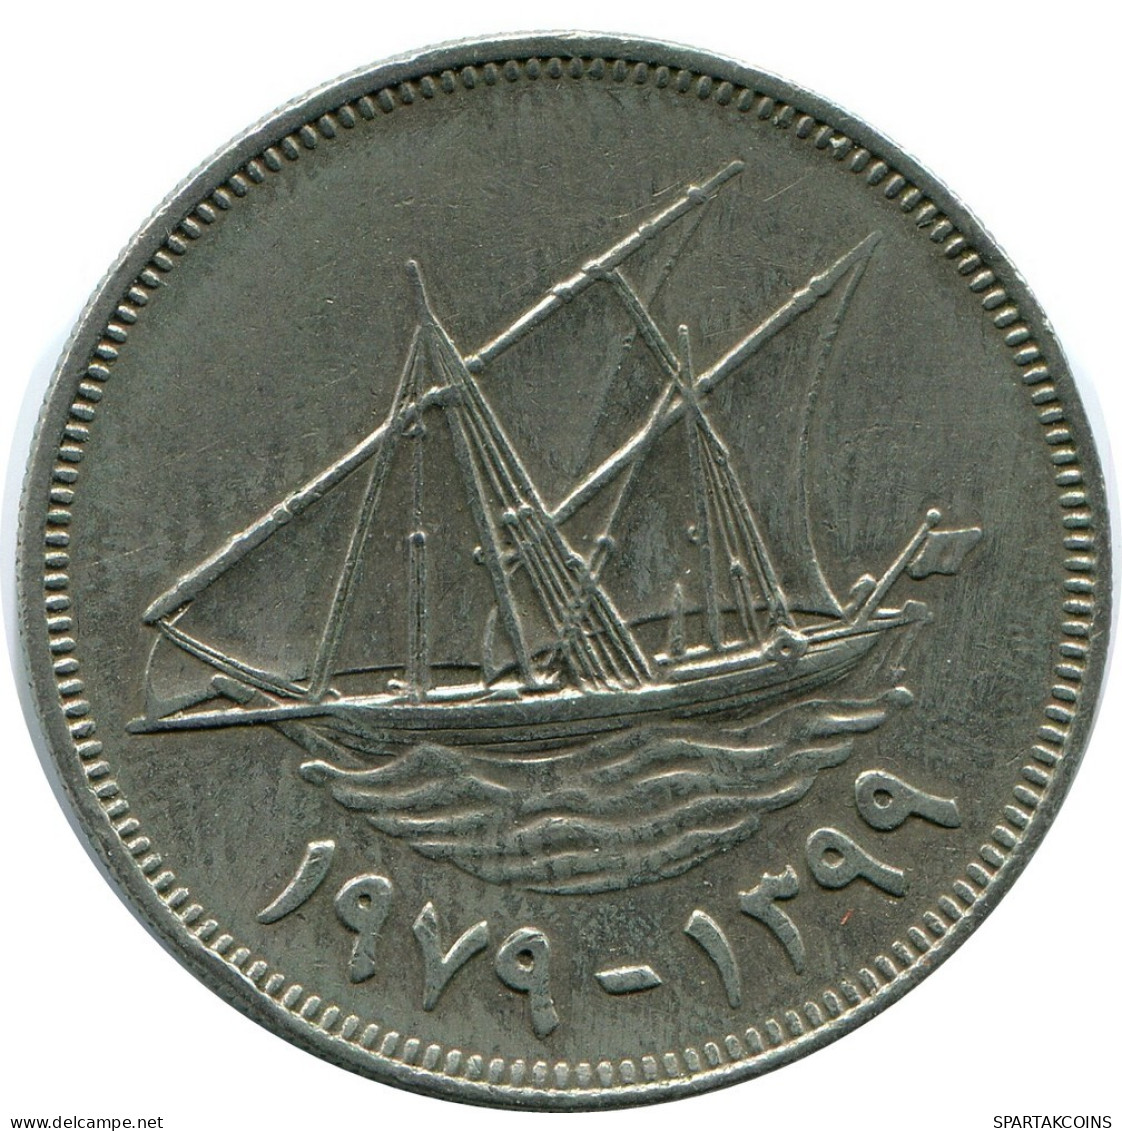 100 FILS 1979 KUWAIT Coin #AP353.U.A - Kuwait